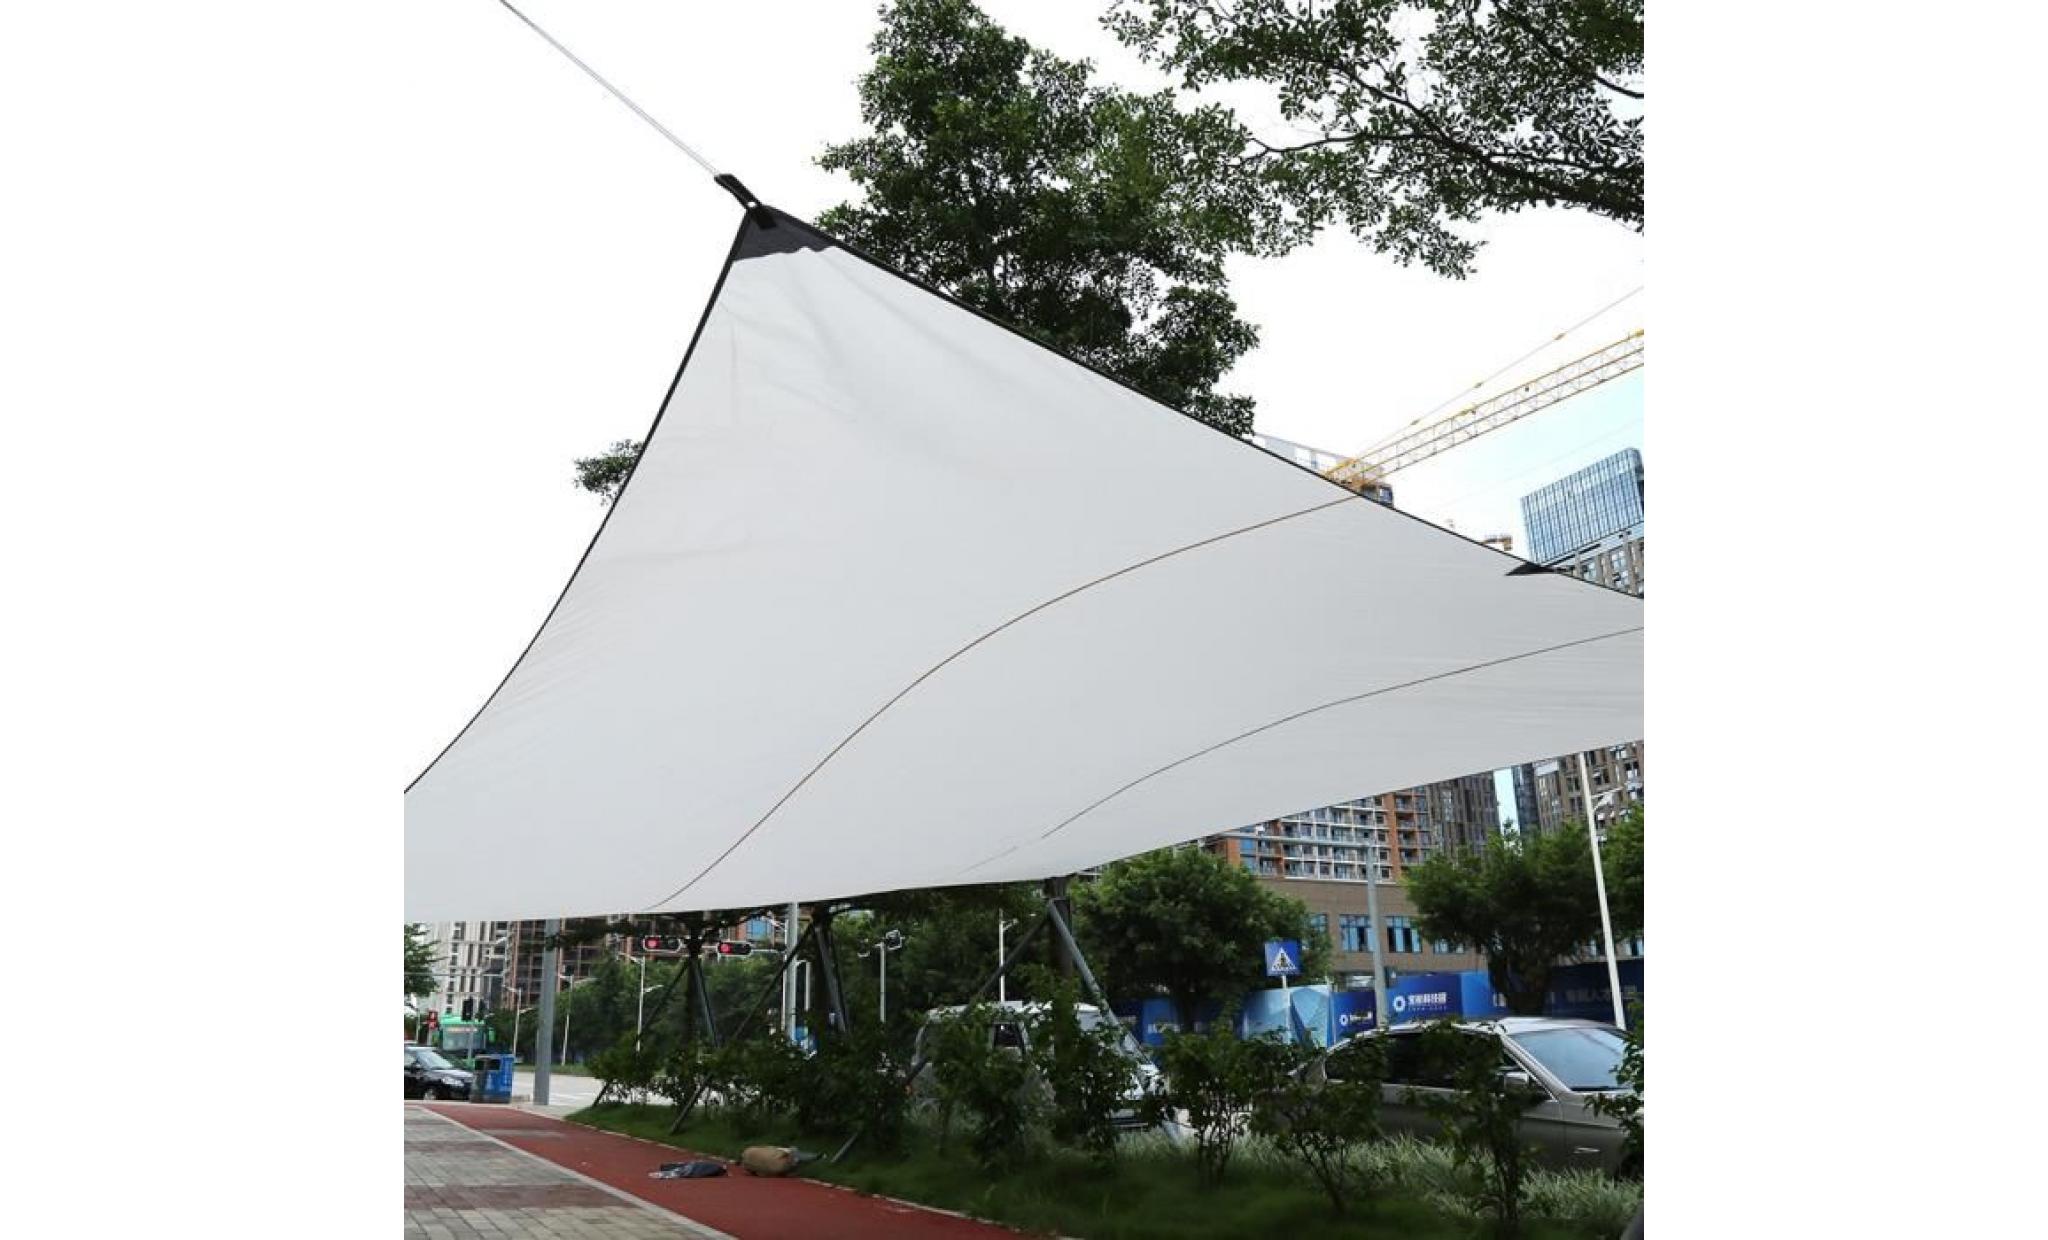 Étanche voile d'ombrage toile solaire de jardin rectangle en tissu extérieur 4.5 * 5m (beige)